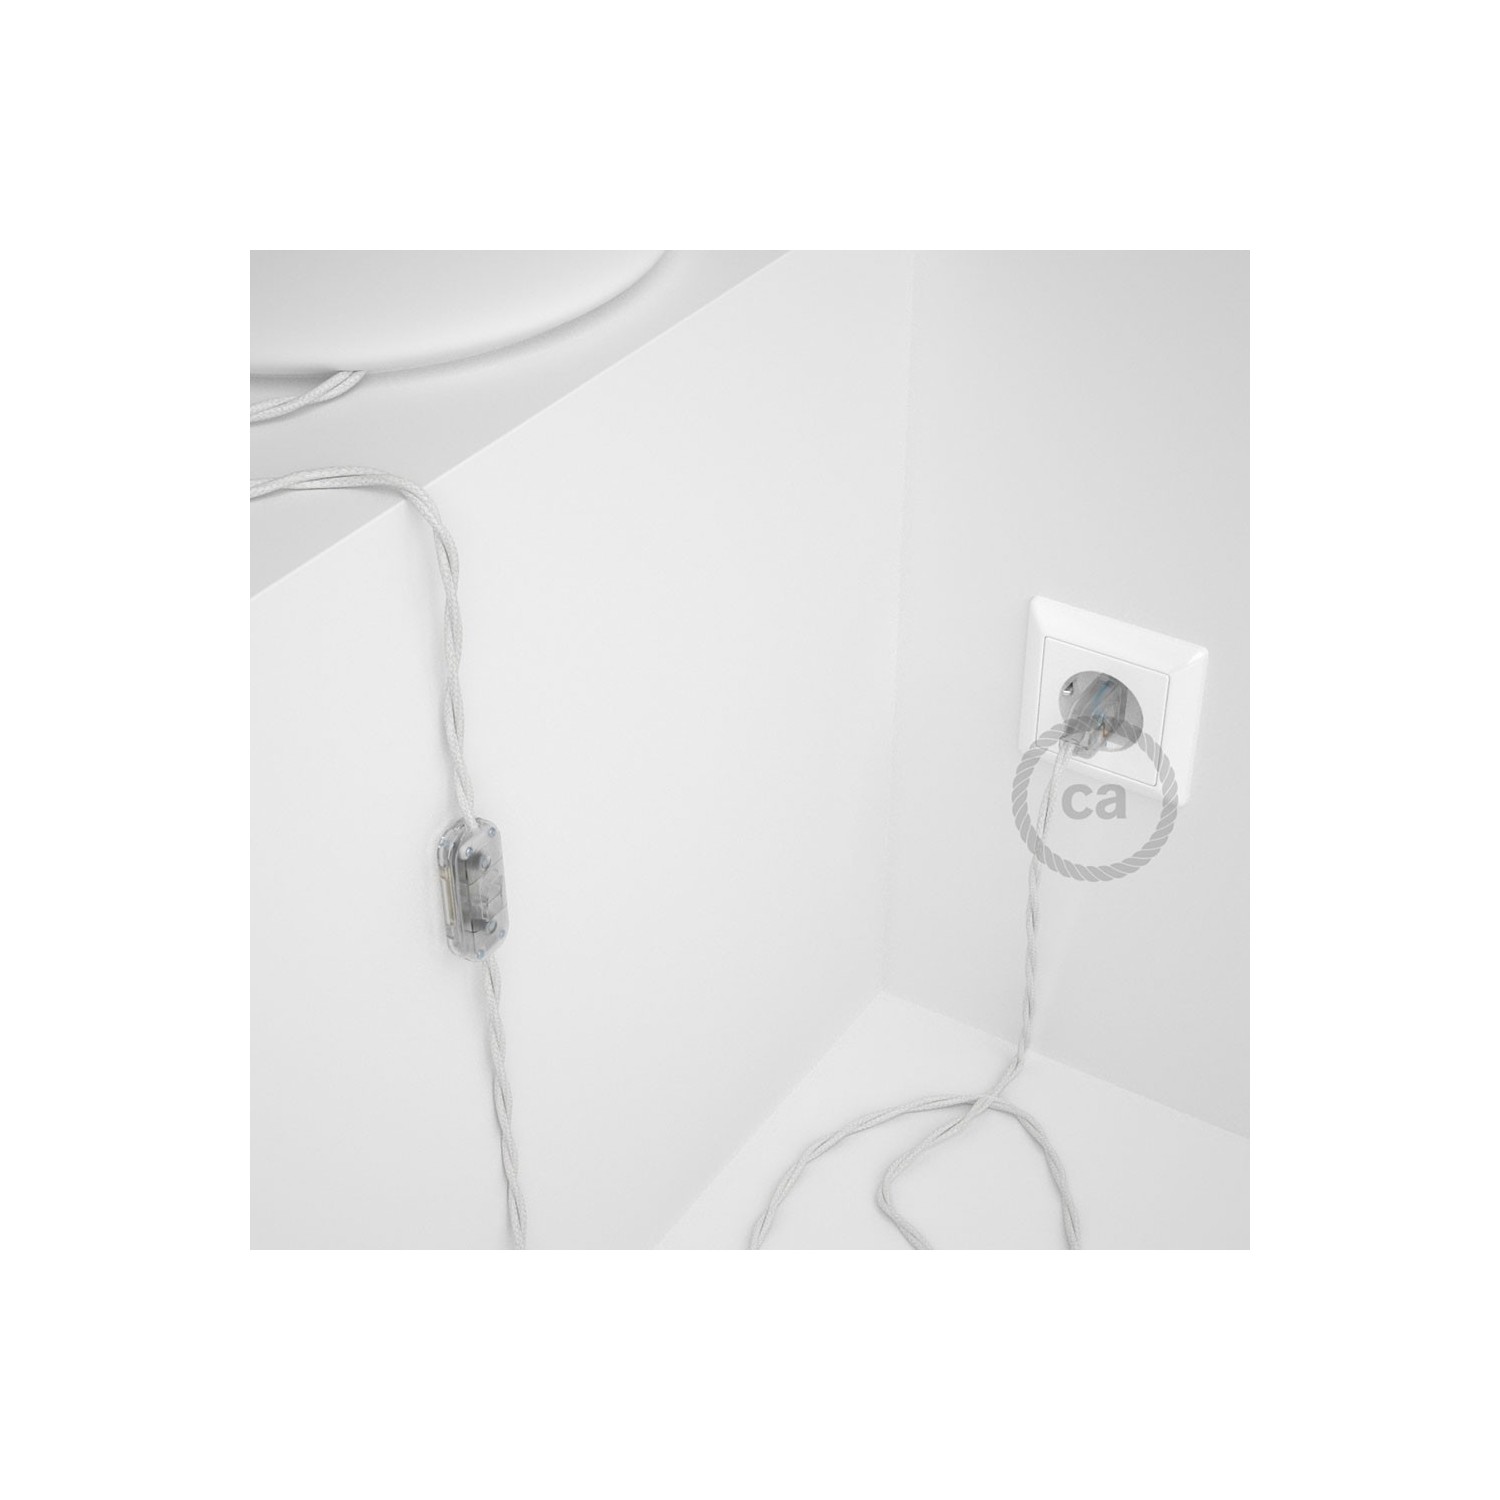 Cablaggio per lampada, cavo TC01 Cotone Bianco 1,80 m. Scegli il colore dell'interruttore e della spina.